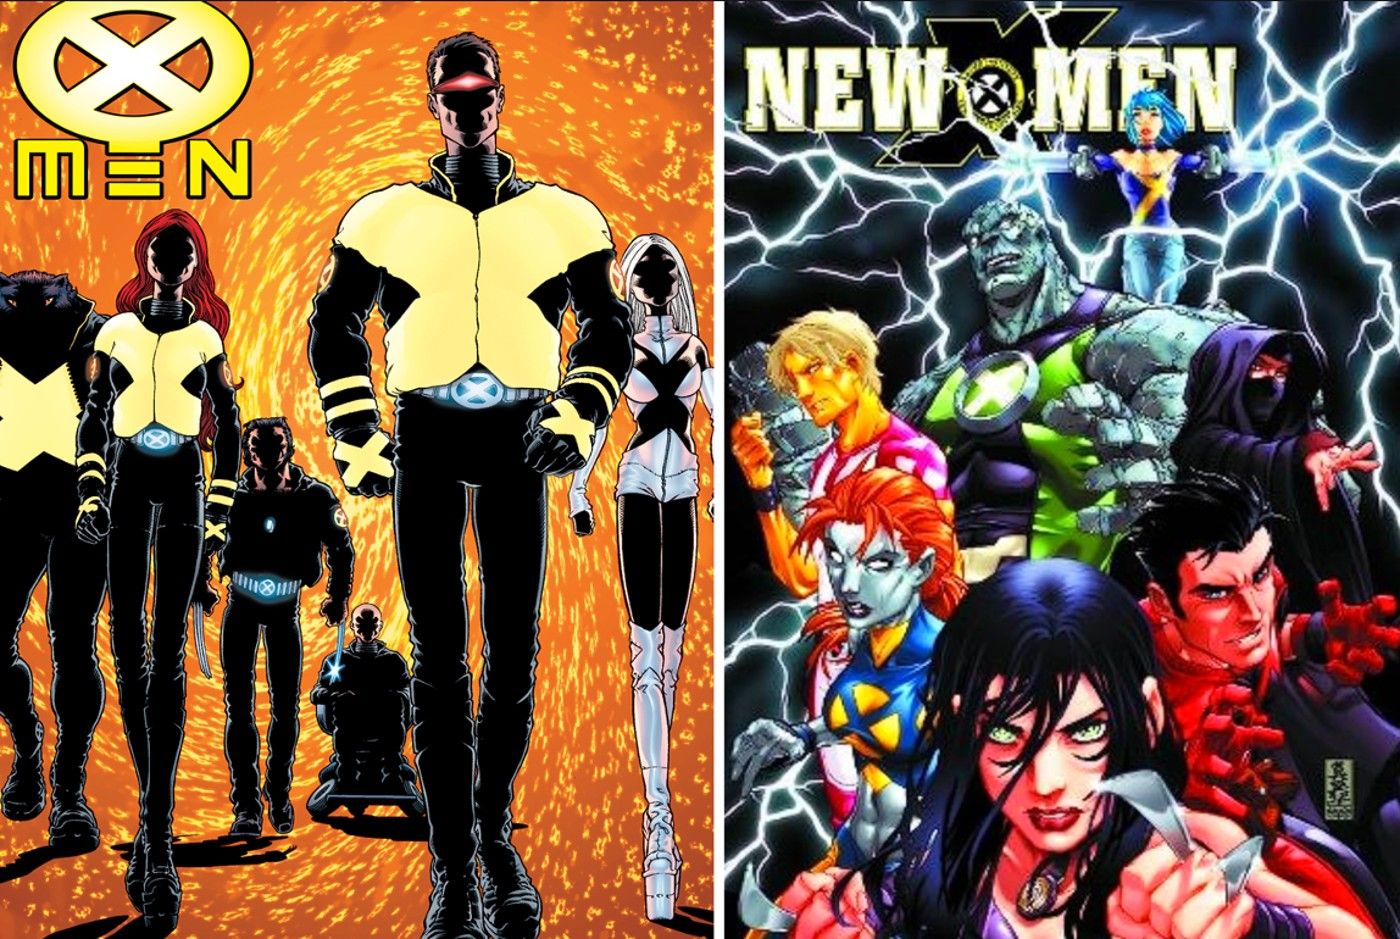 new x-men vol 1 and vol 2